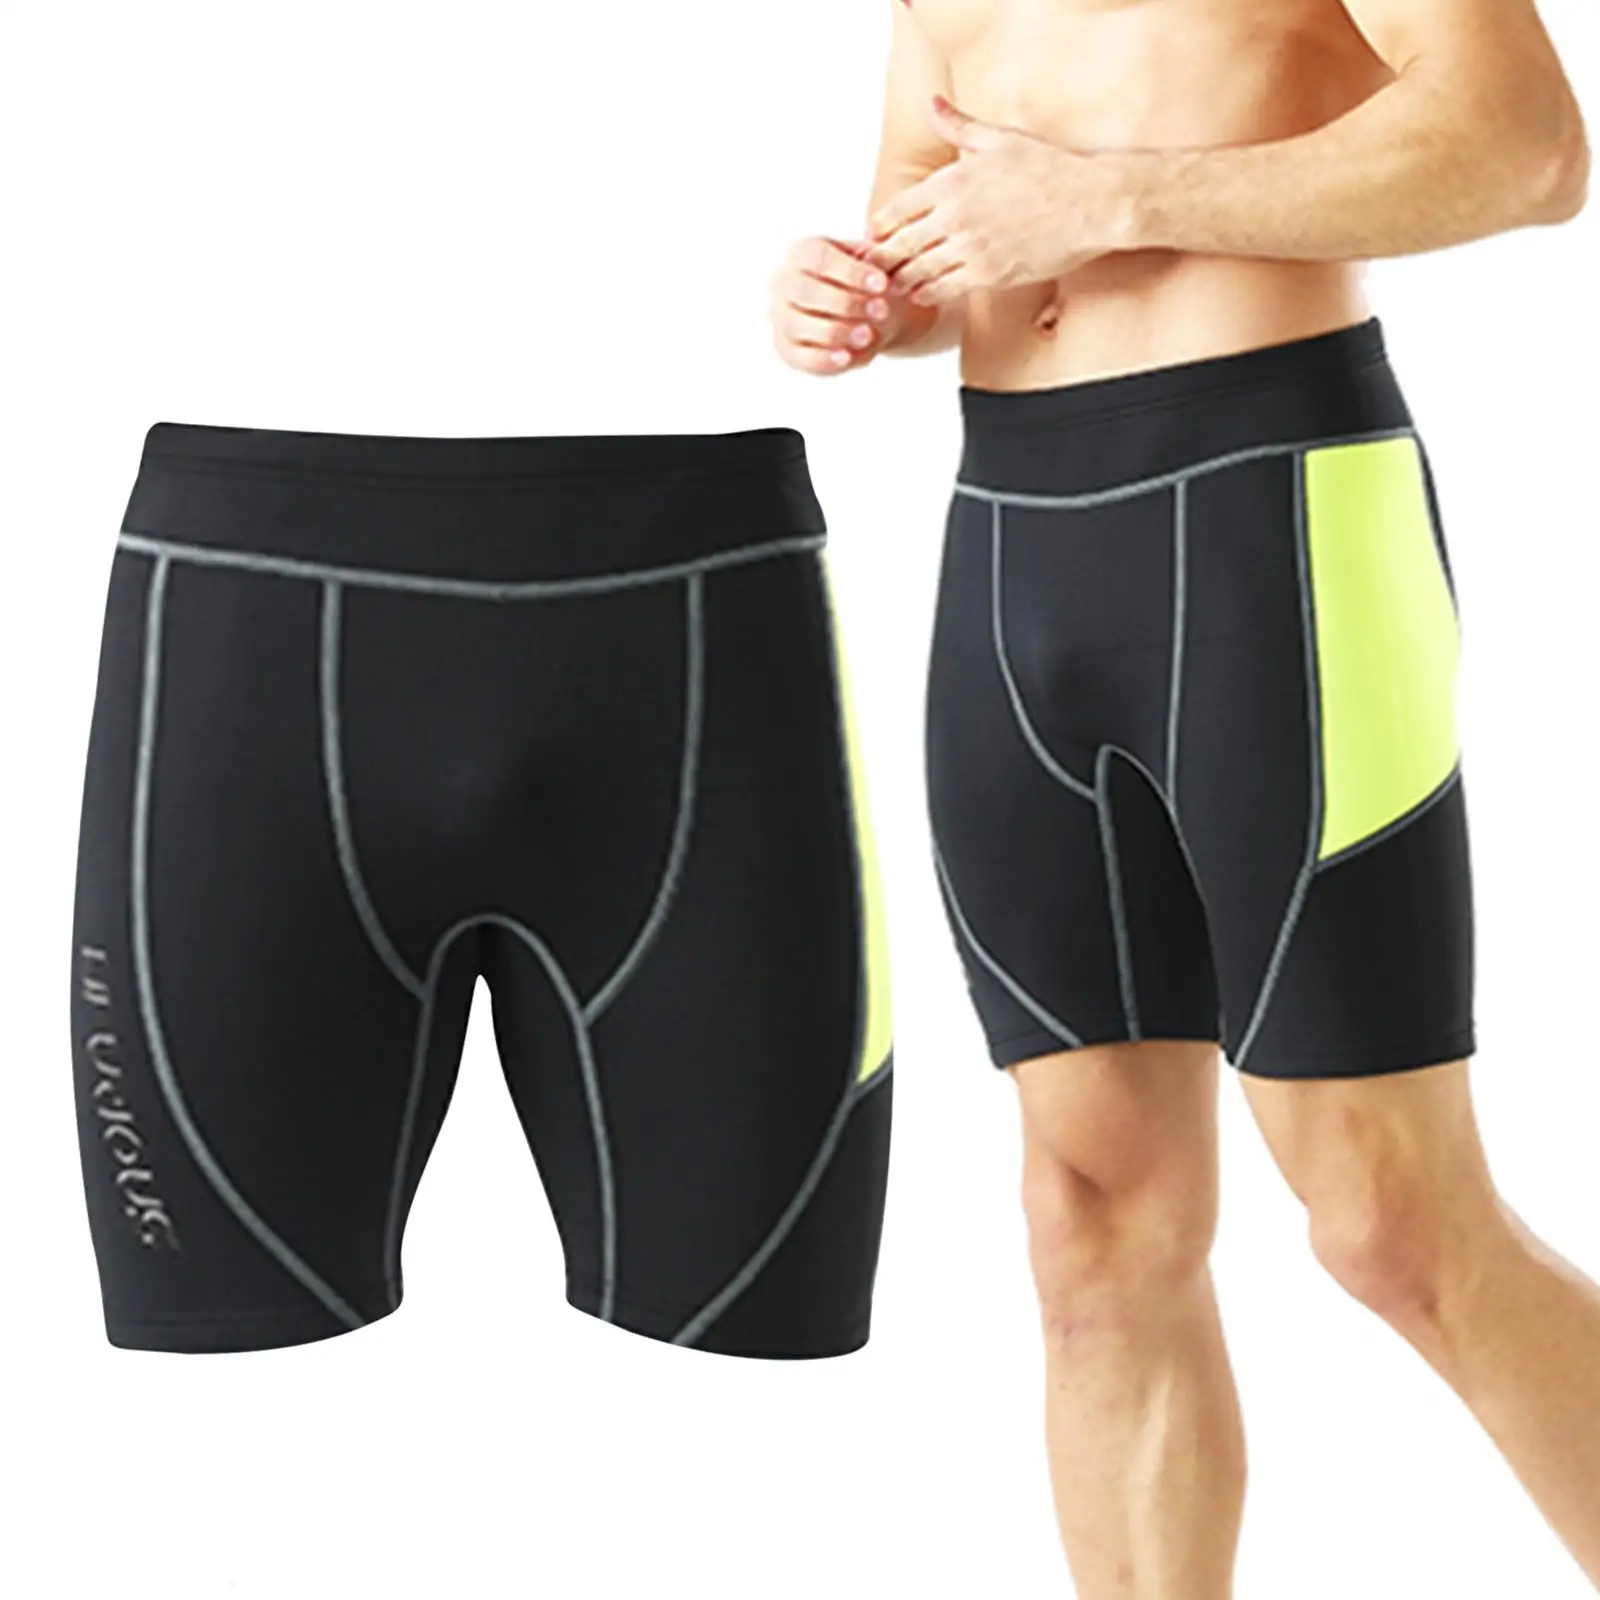 Мъжки неопренови шорти с дебелина 2 мм, за топене на неопрен за водна аеробика, спортни панталони за неопрен - 0